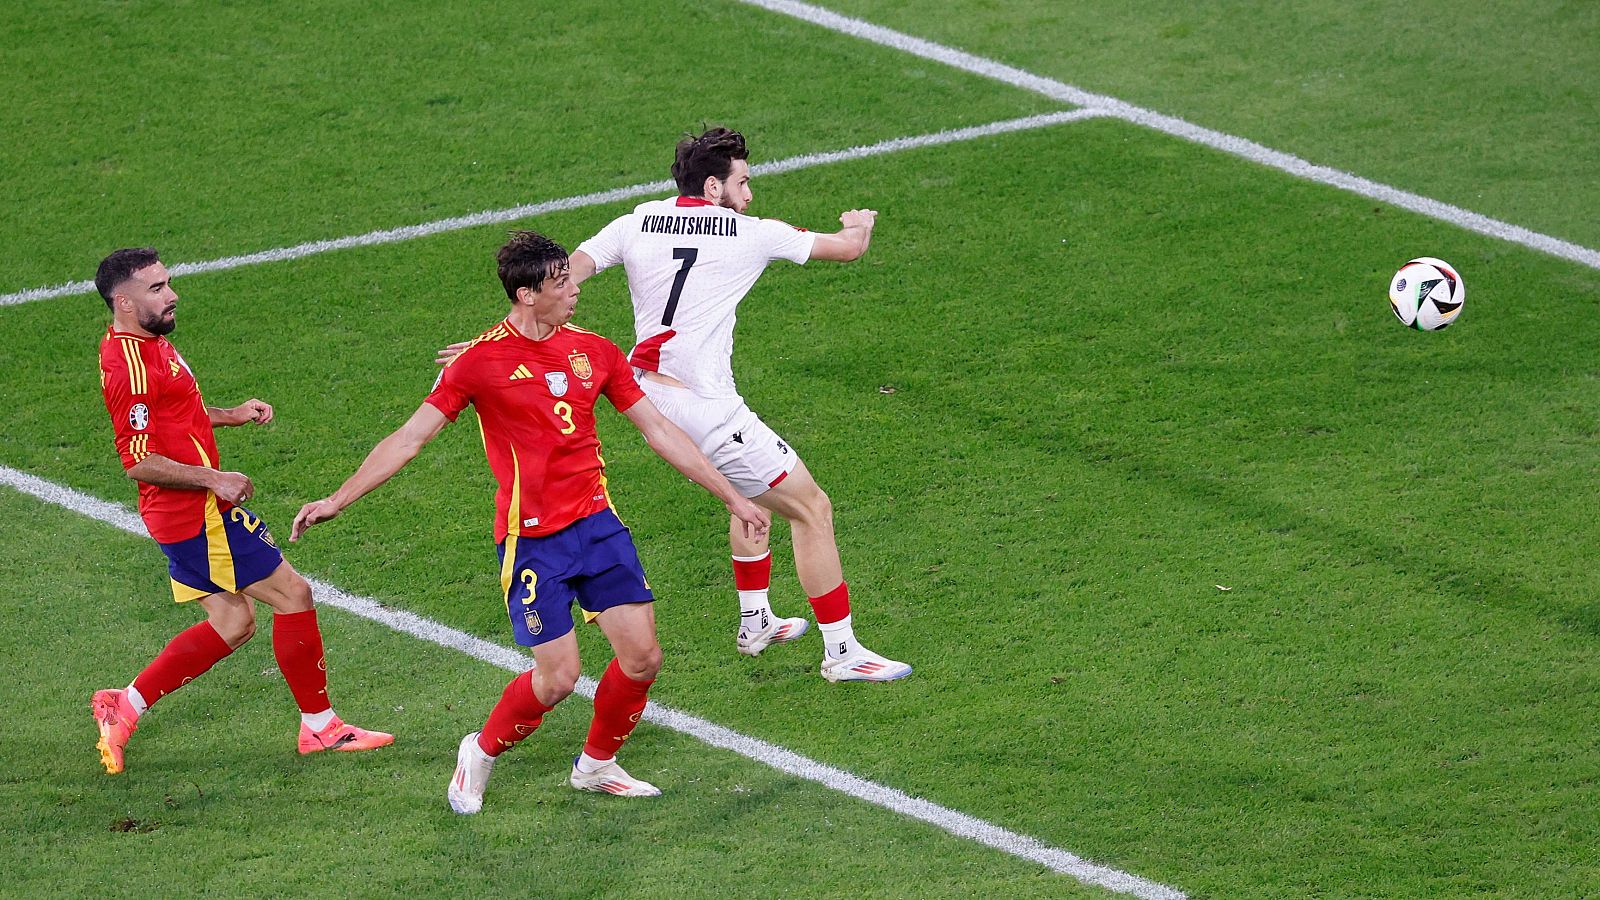 Le Normand se anota en propia ante Georgia el primer gol en contra de España en la Eurocopa